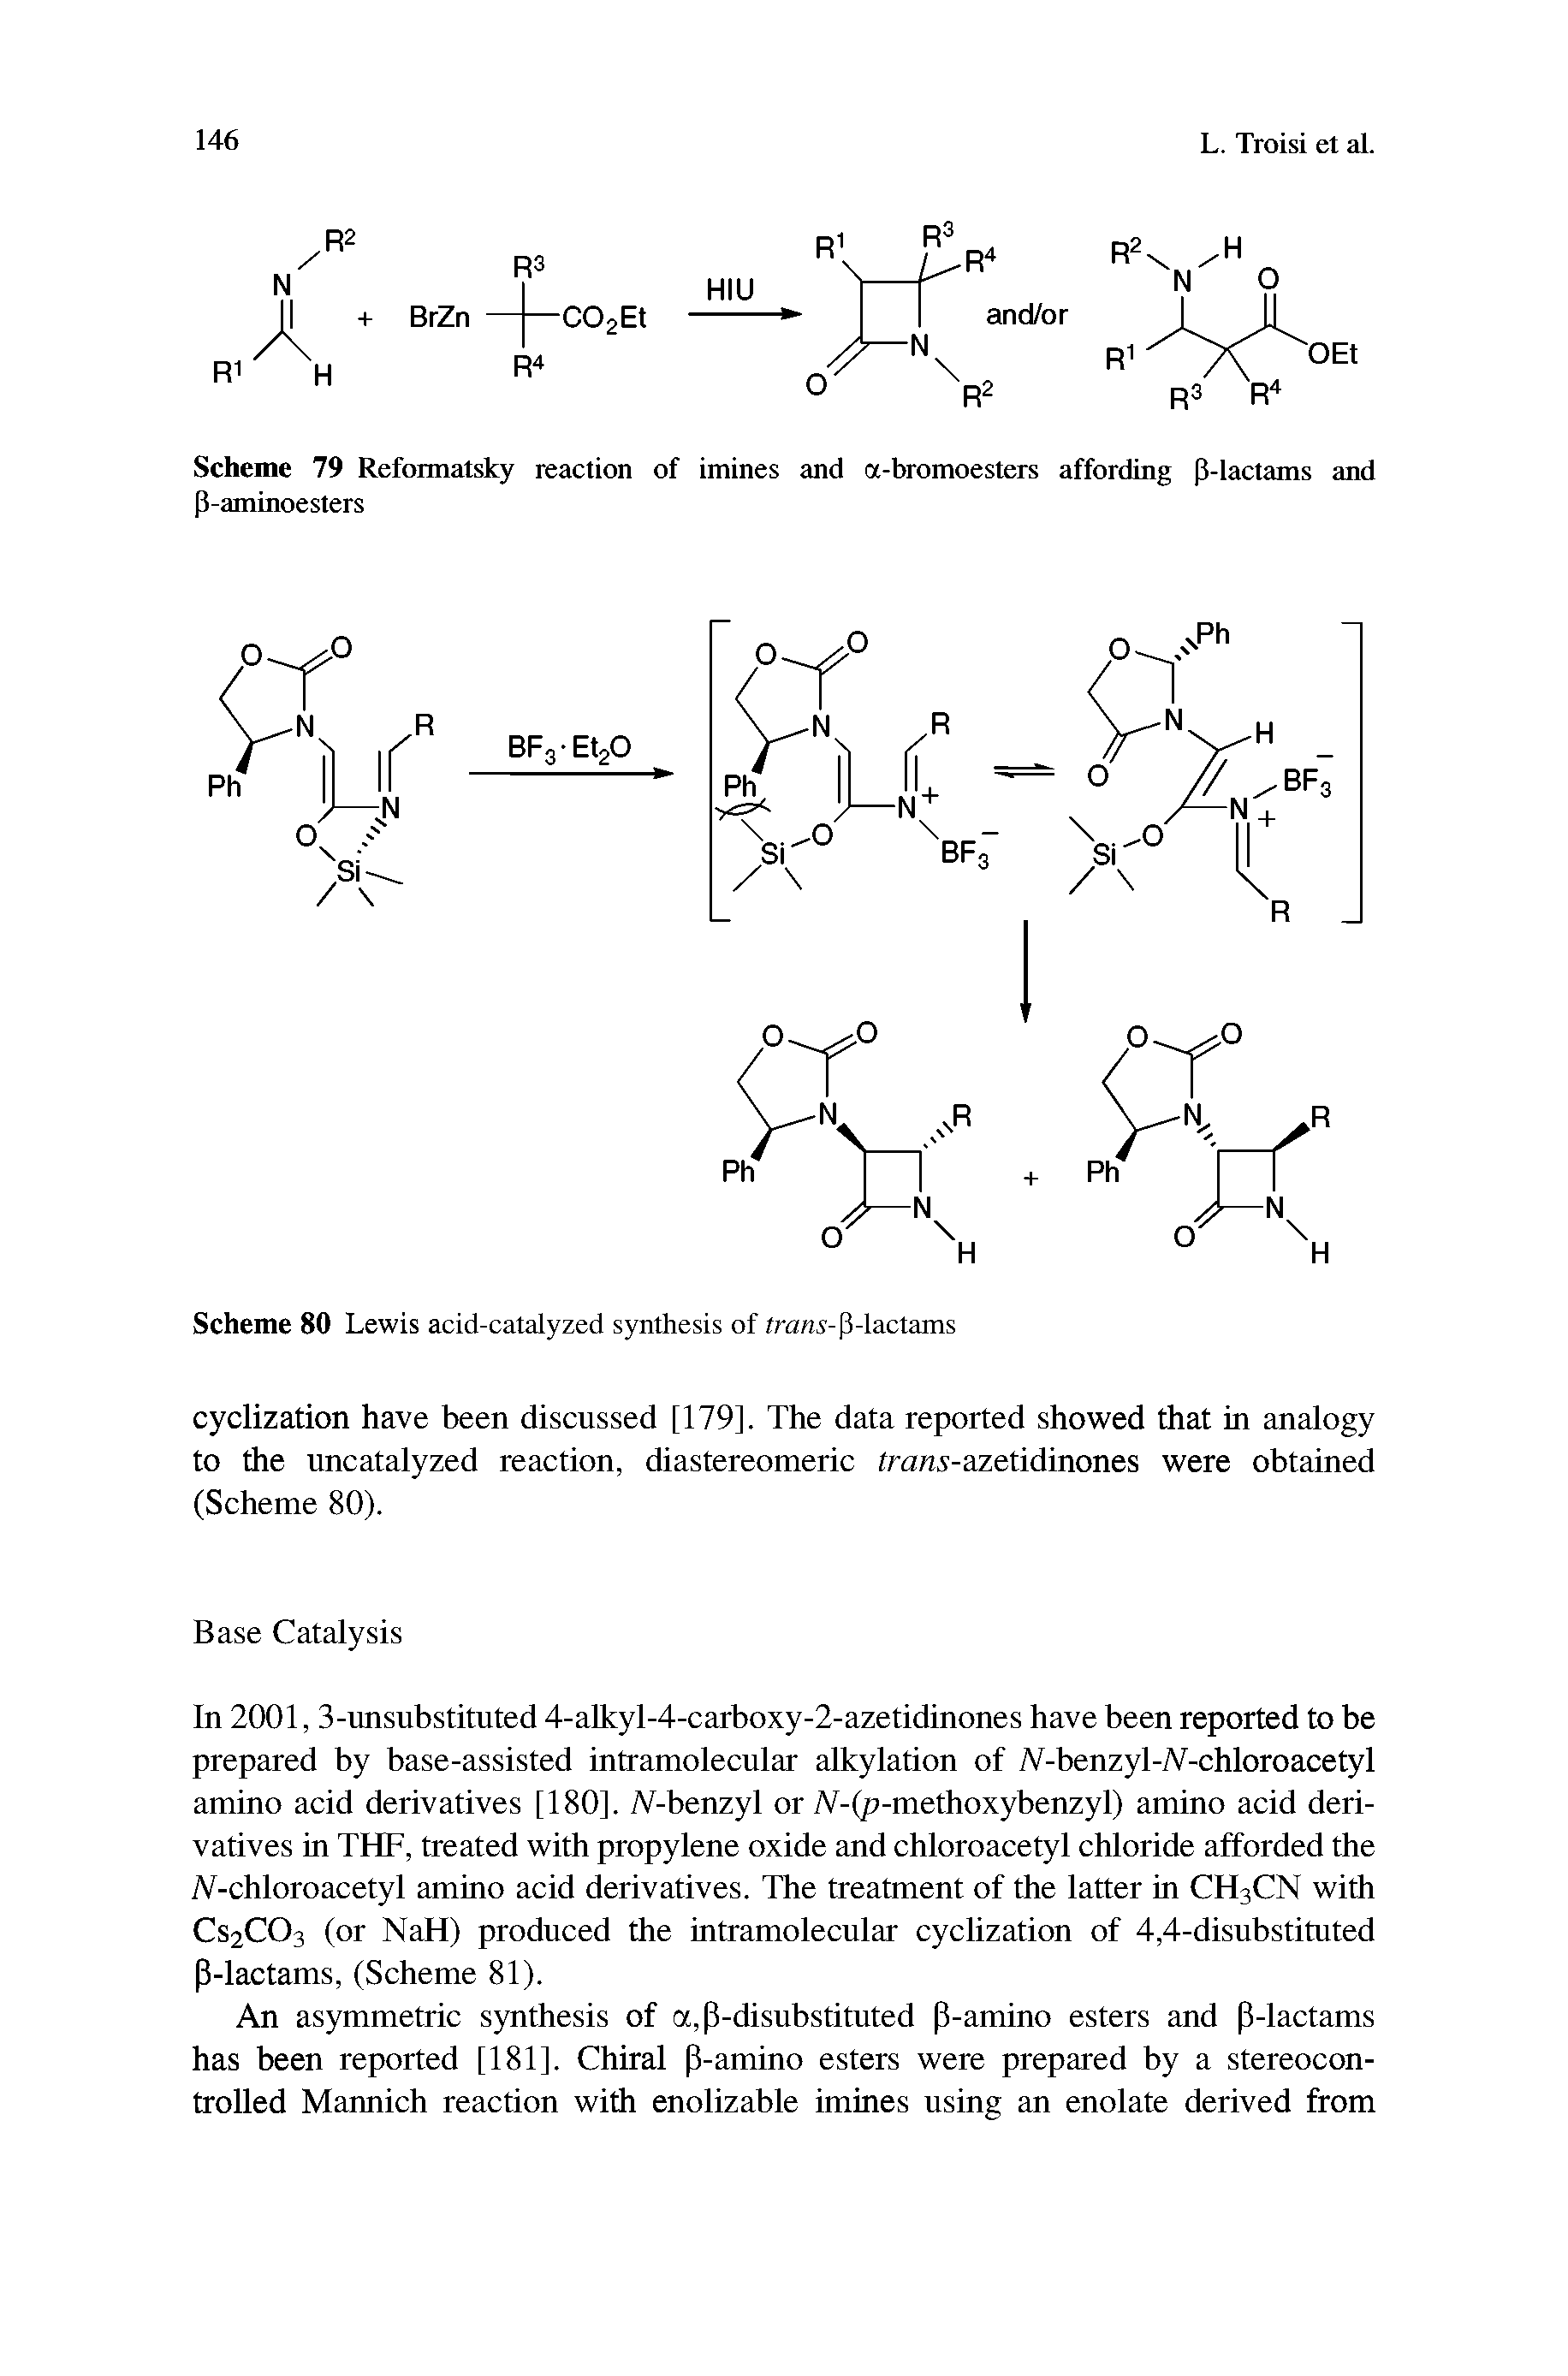 Scheme 80 Lewis acid-catalyzed synthesis of trans-P-lactams...